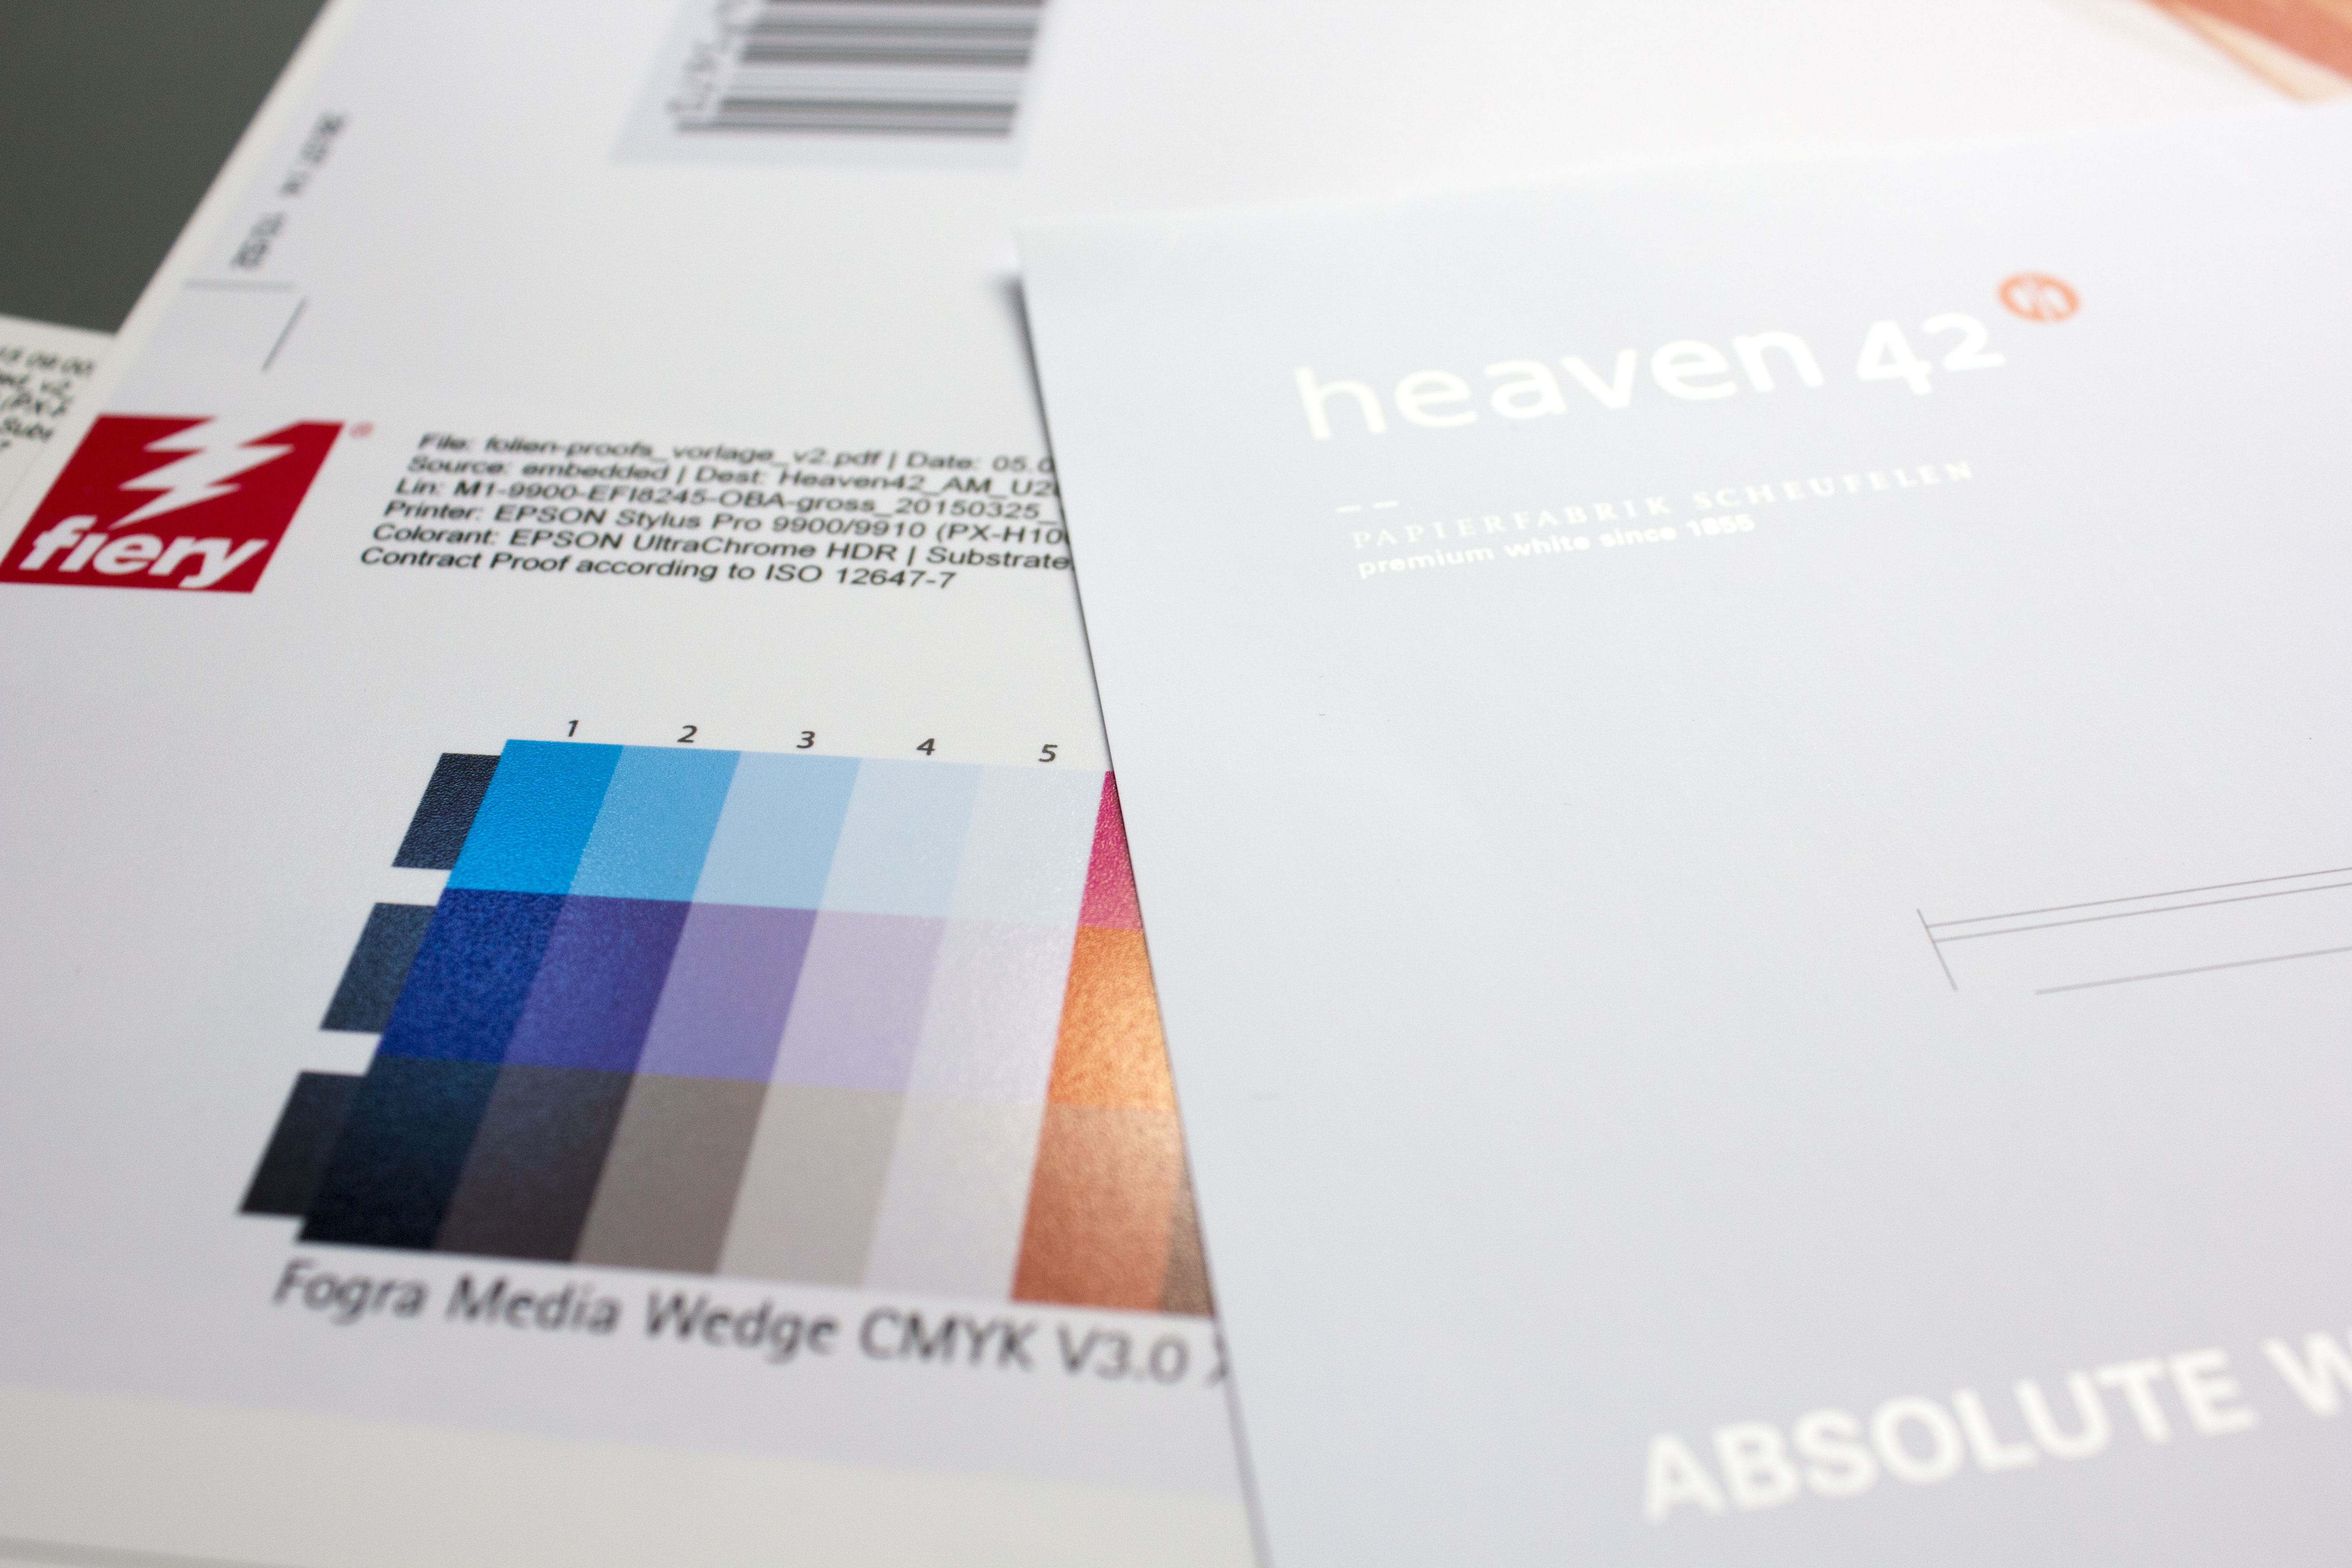 Scheufelen Heaven 42 Heaven42 Comparison with digital proof from Proof GmbH